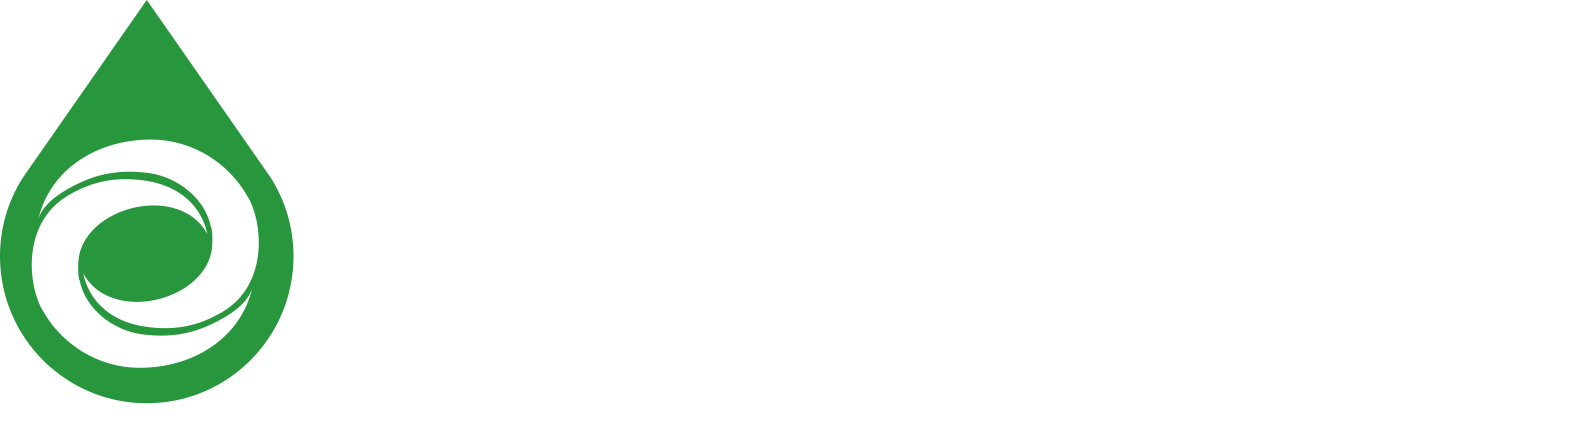 Synthesis logo white